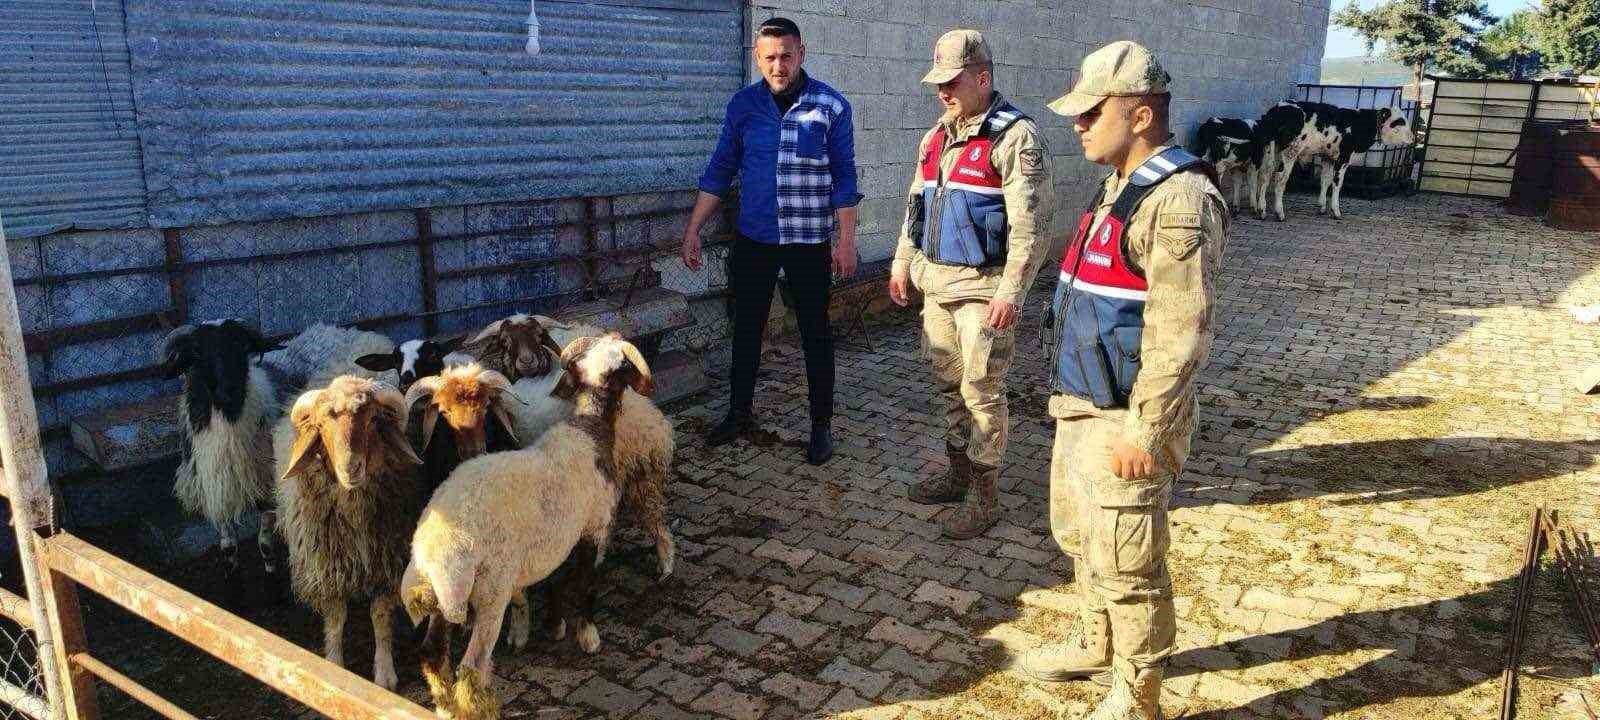 Kaybolan koyunları jandarma buldu